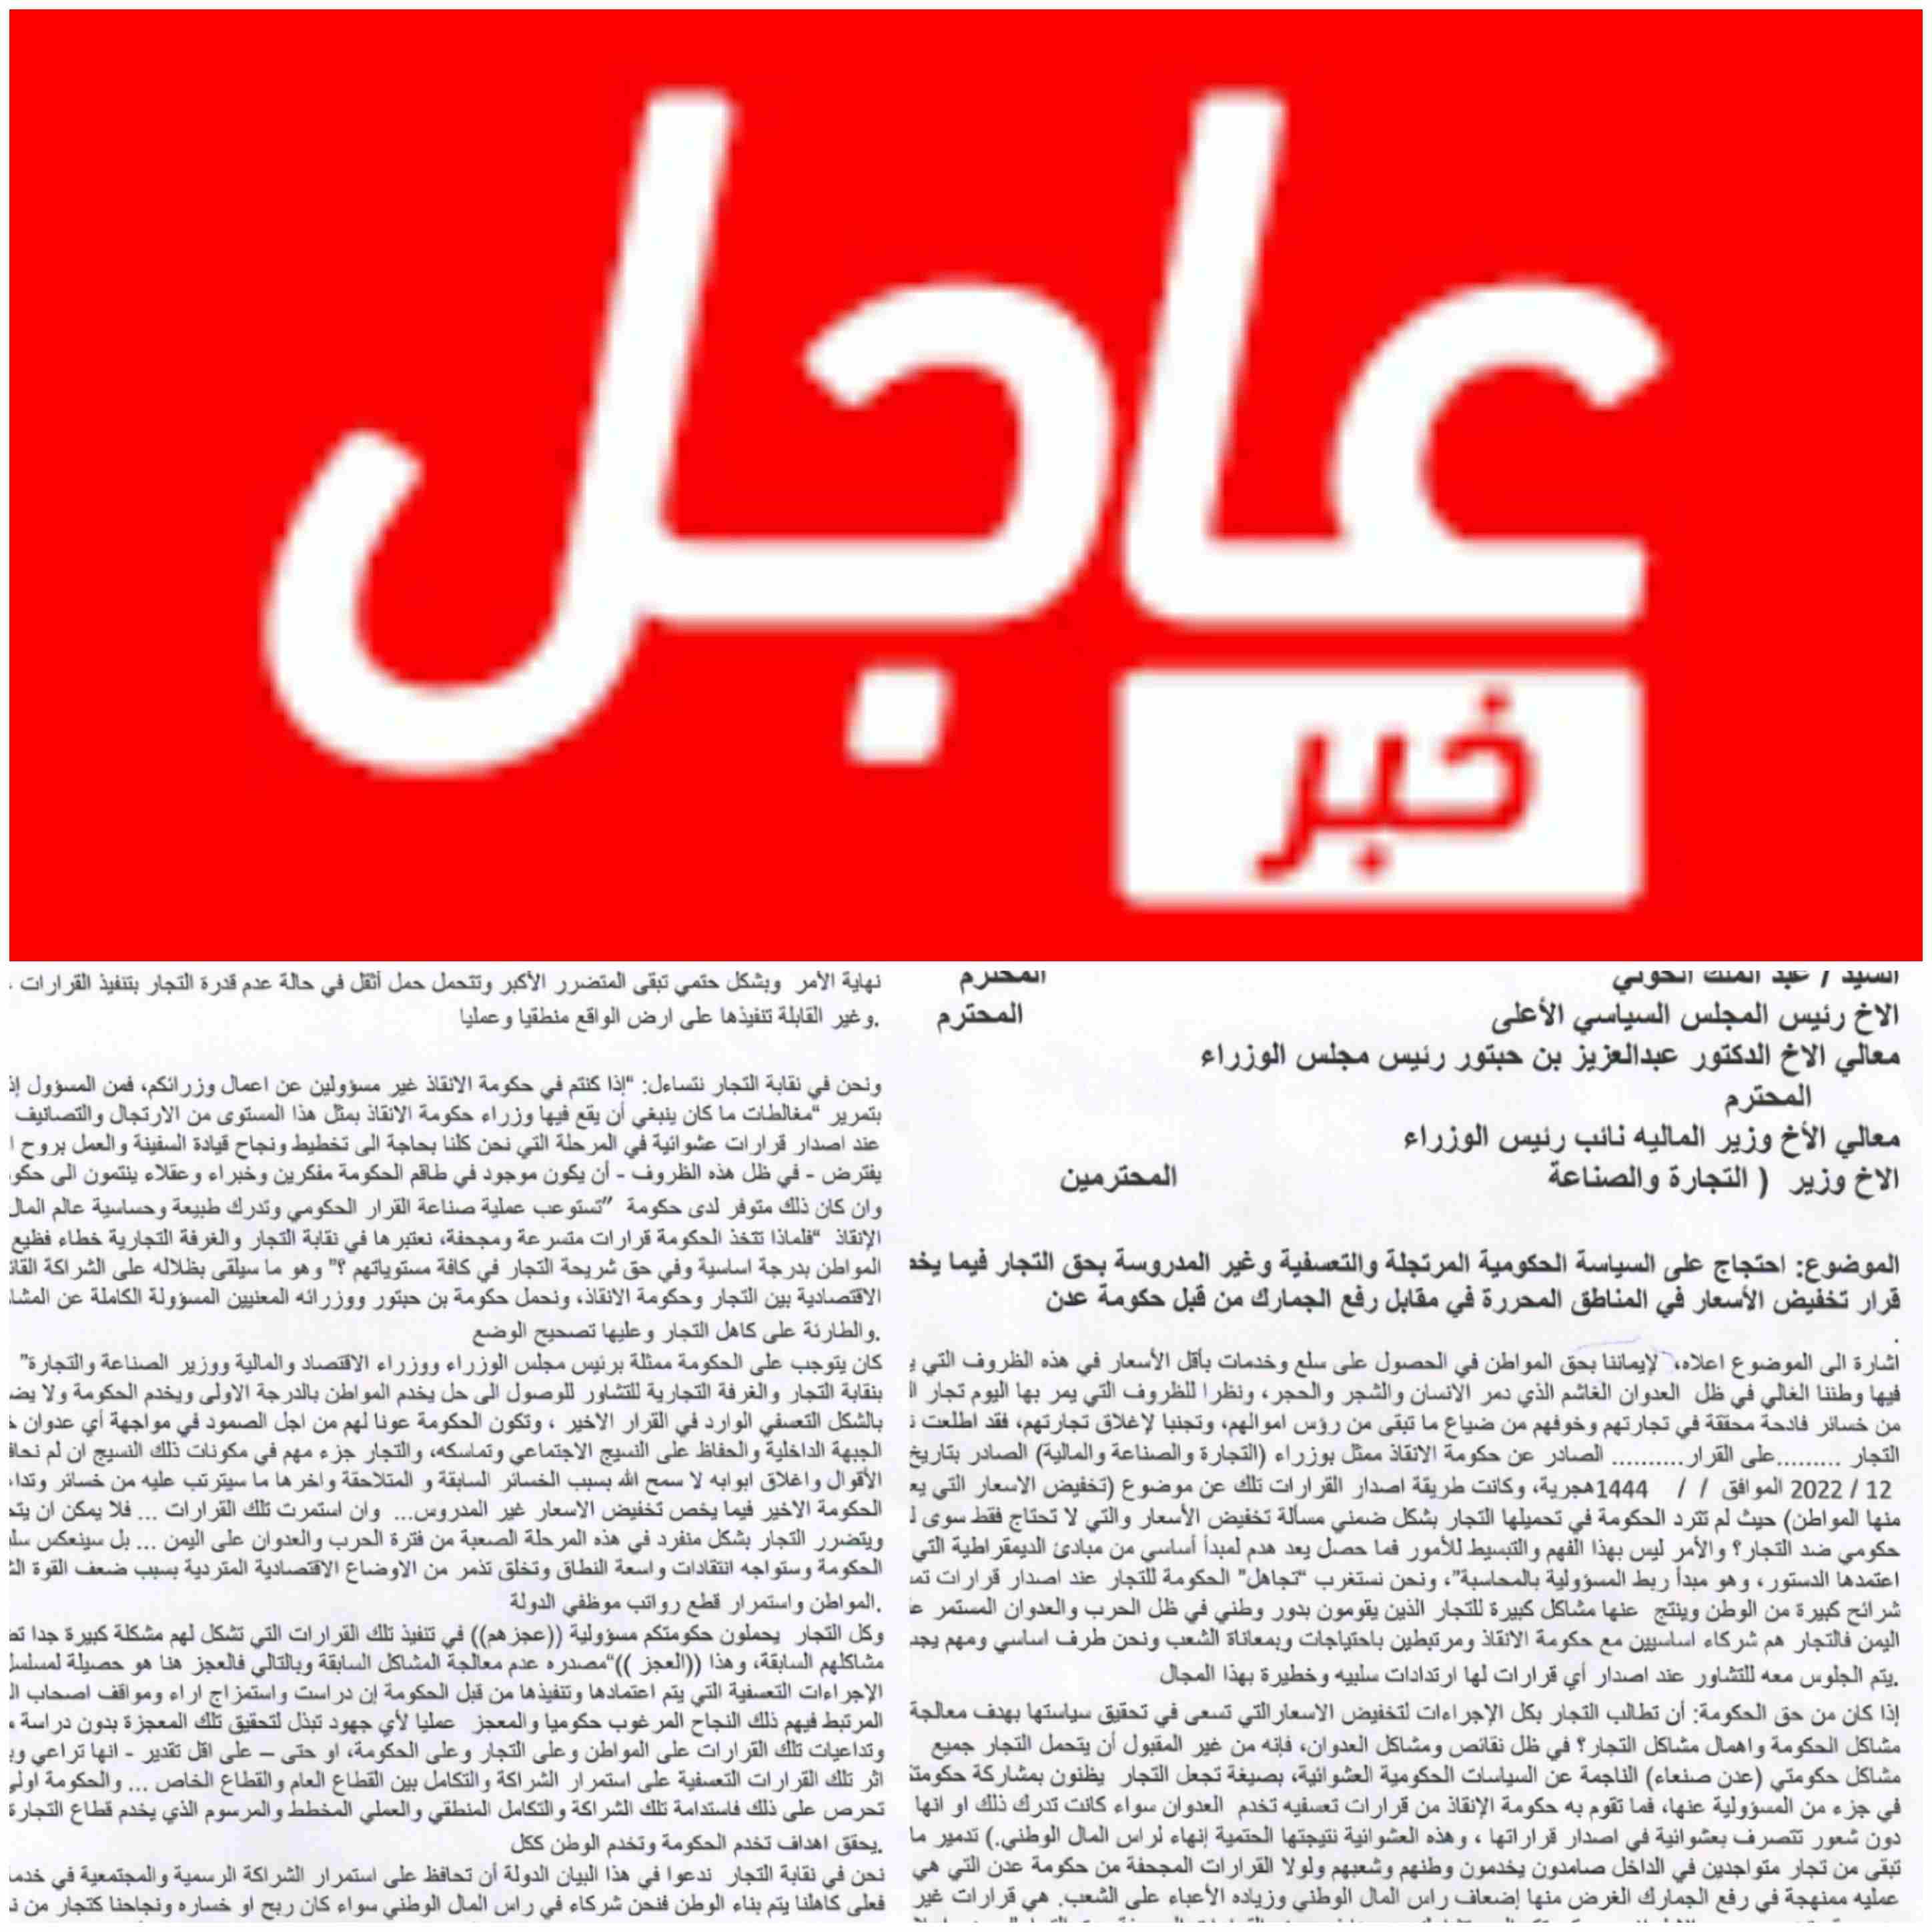 في بيان هام نقابة التجار والغرفة التجارية يحتجون على تعسفات حكومة الحوثيين بصنعاء ويهددون بالاضراب الشامل